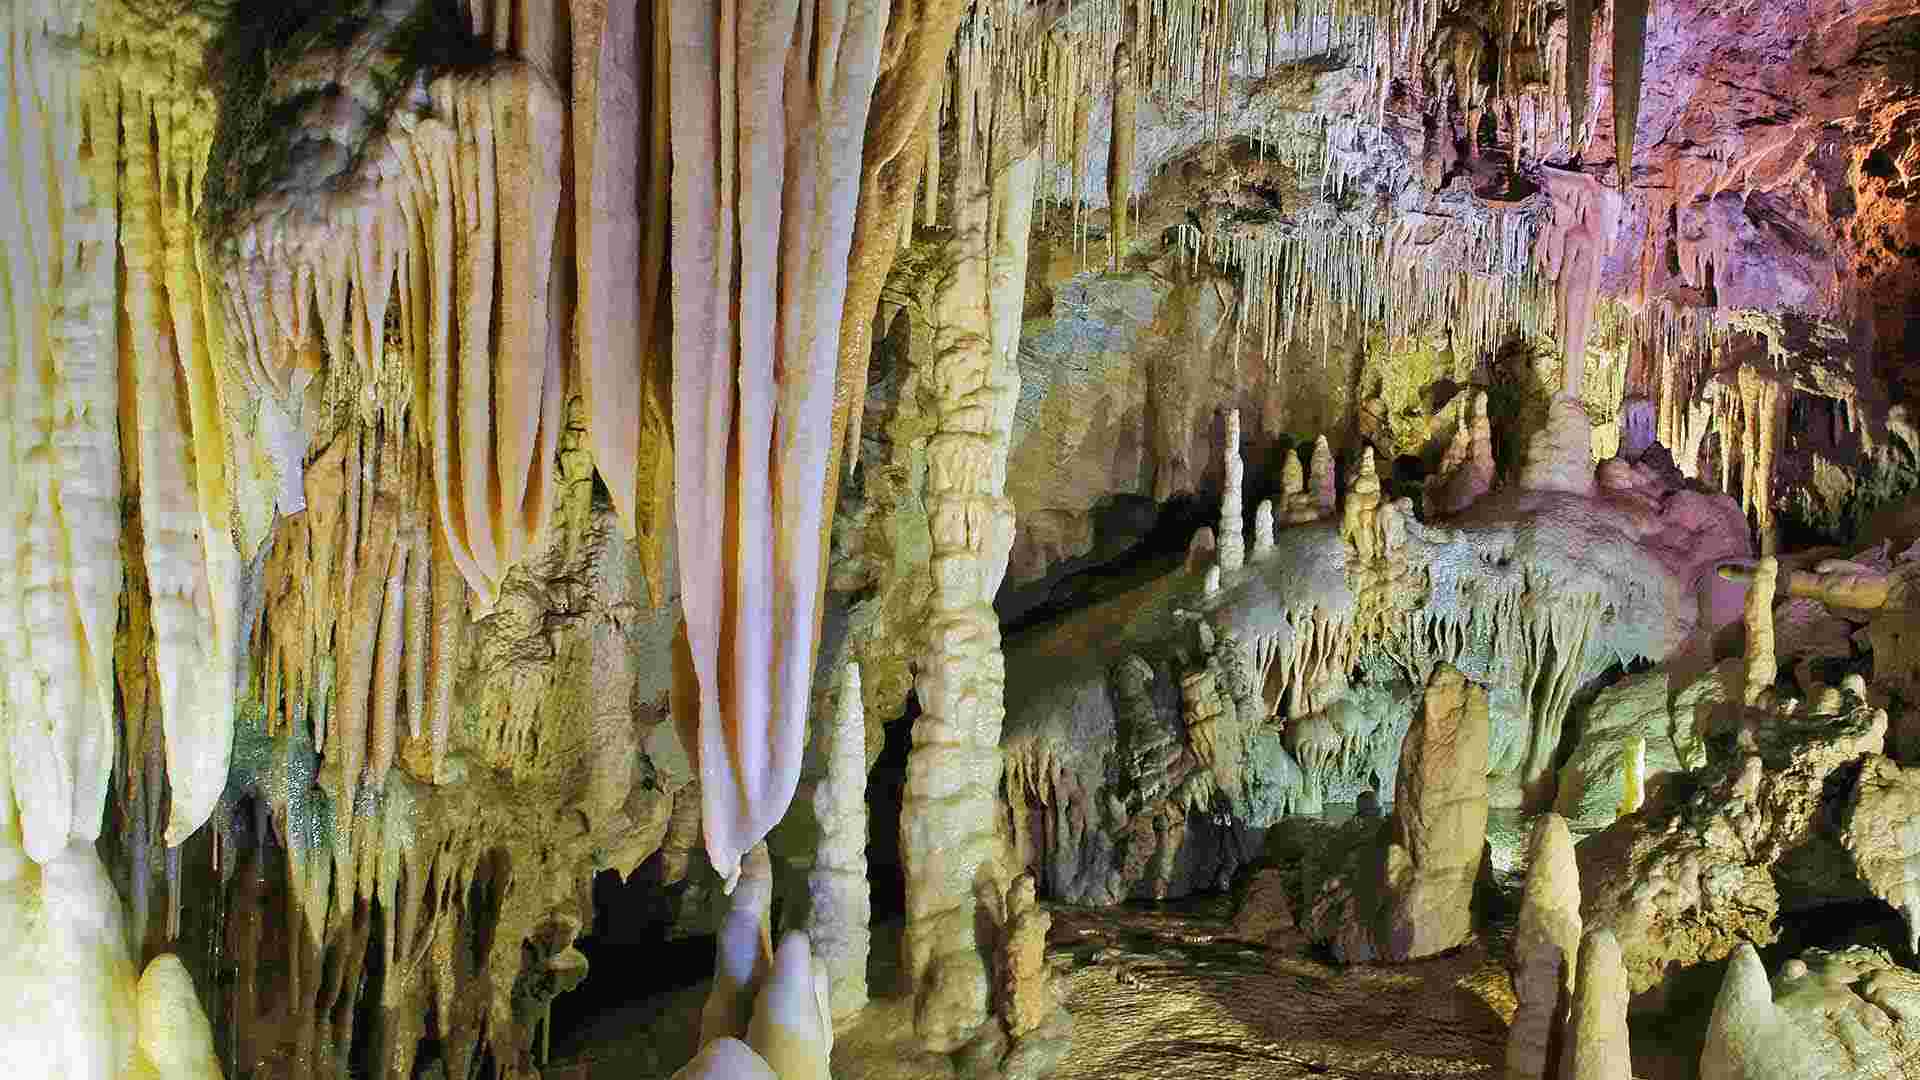 No puedes perderte estas espectaculares grutas de los Pirineos catalanes, ¡son sitios únicos!